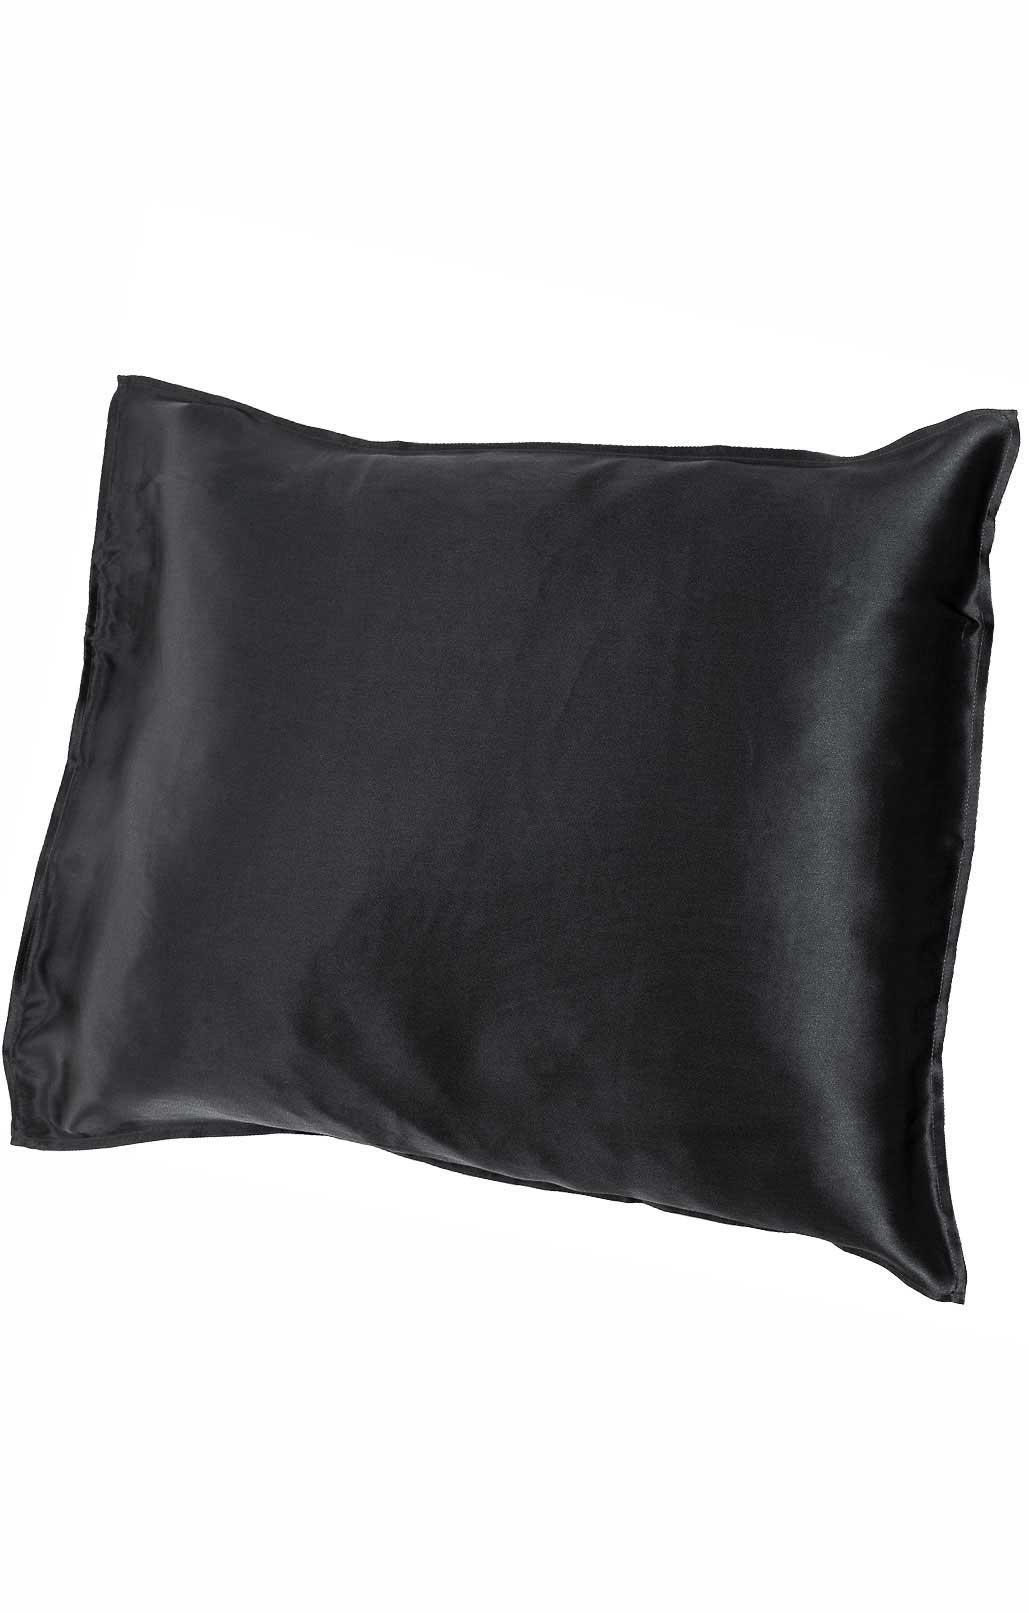 Silk pillowcase, black